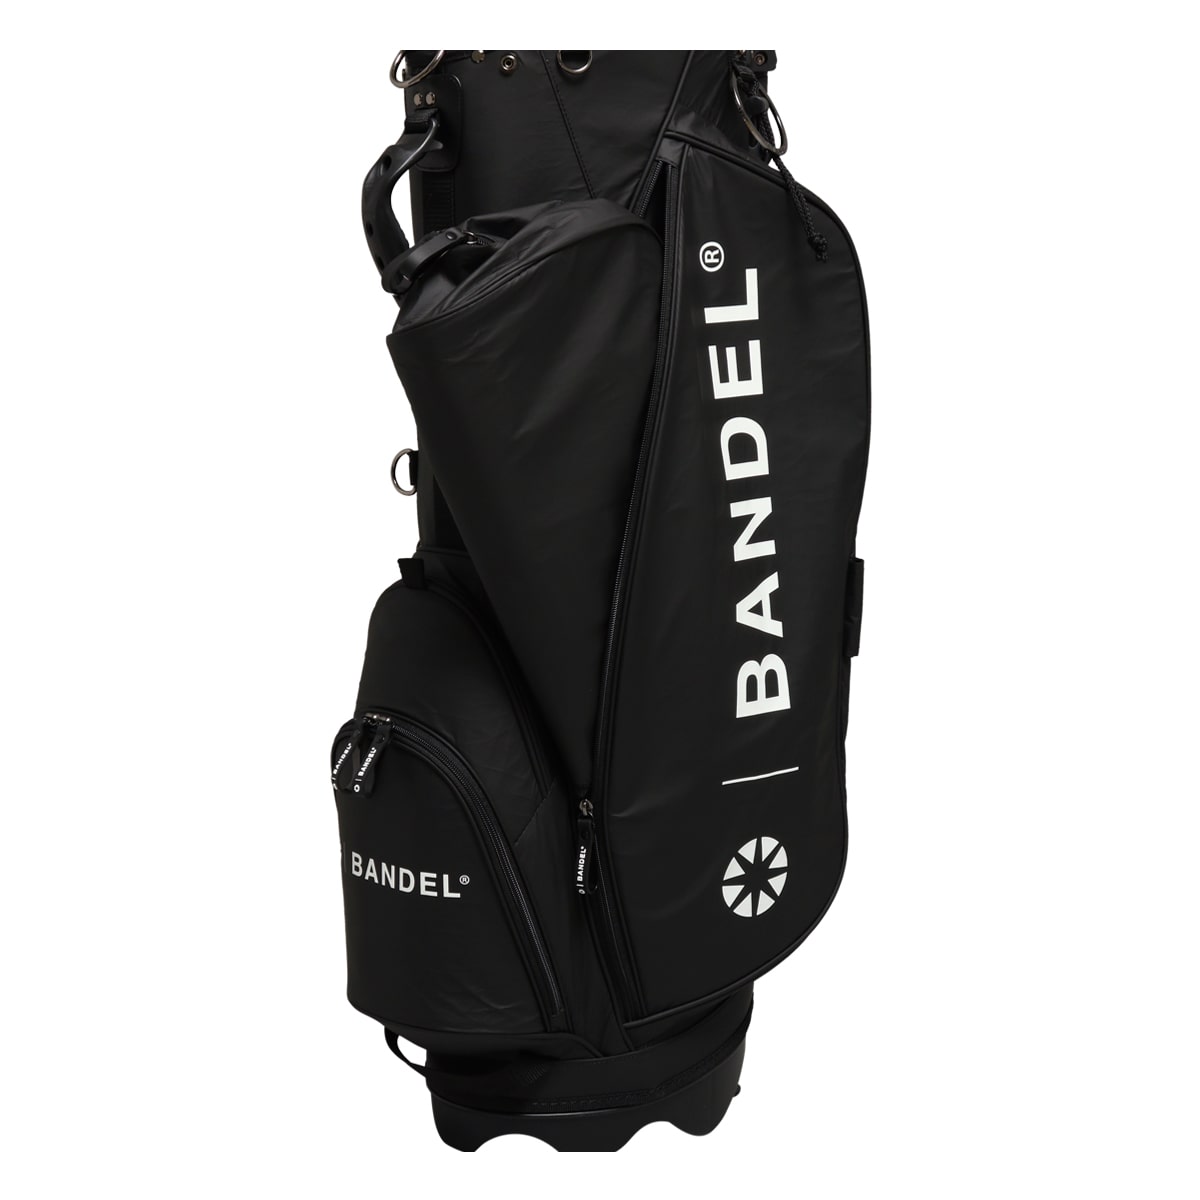 バンデル ゴルフ キャディバッグ スタンド式 9.5型 46インチ対応 メンズ BGI-3SCB BANDEL CRUMPLE STAND CADDY  BAG ゴルフバッグ スタンドバッグ